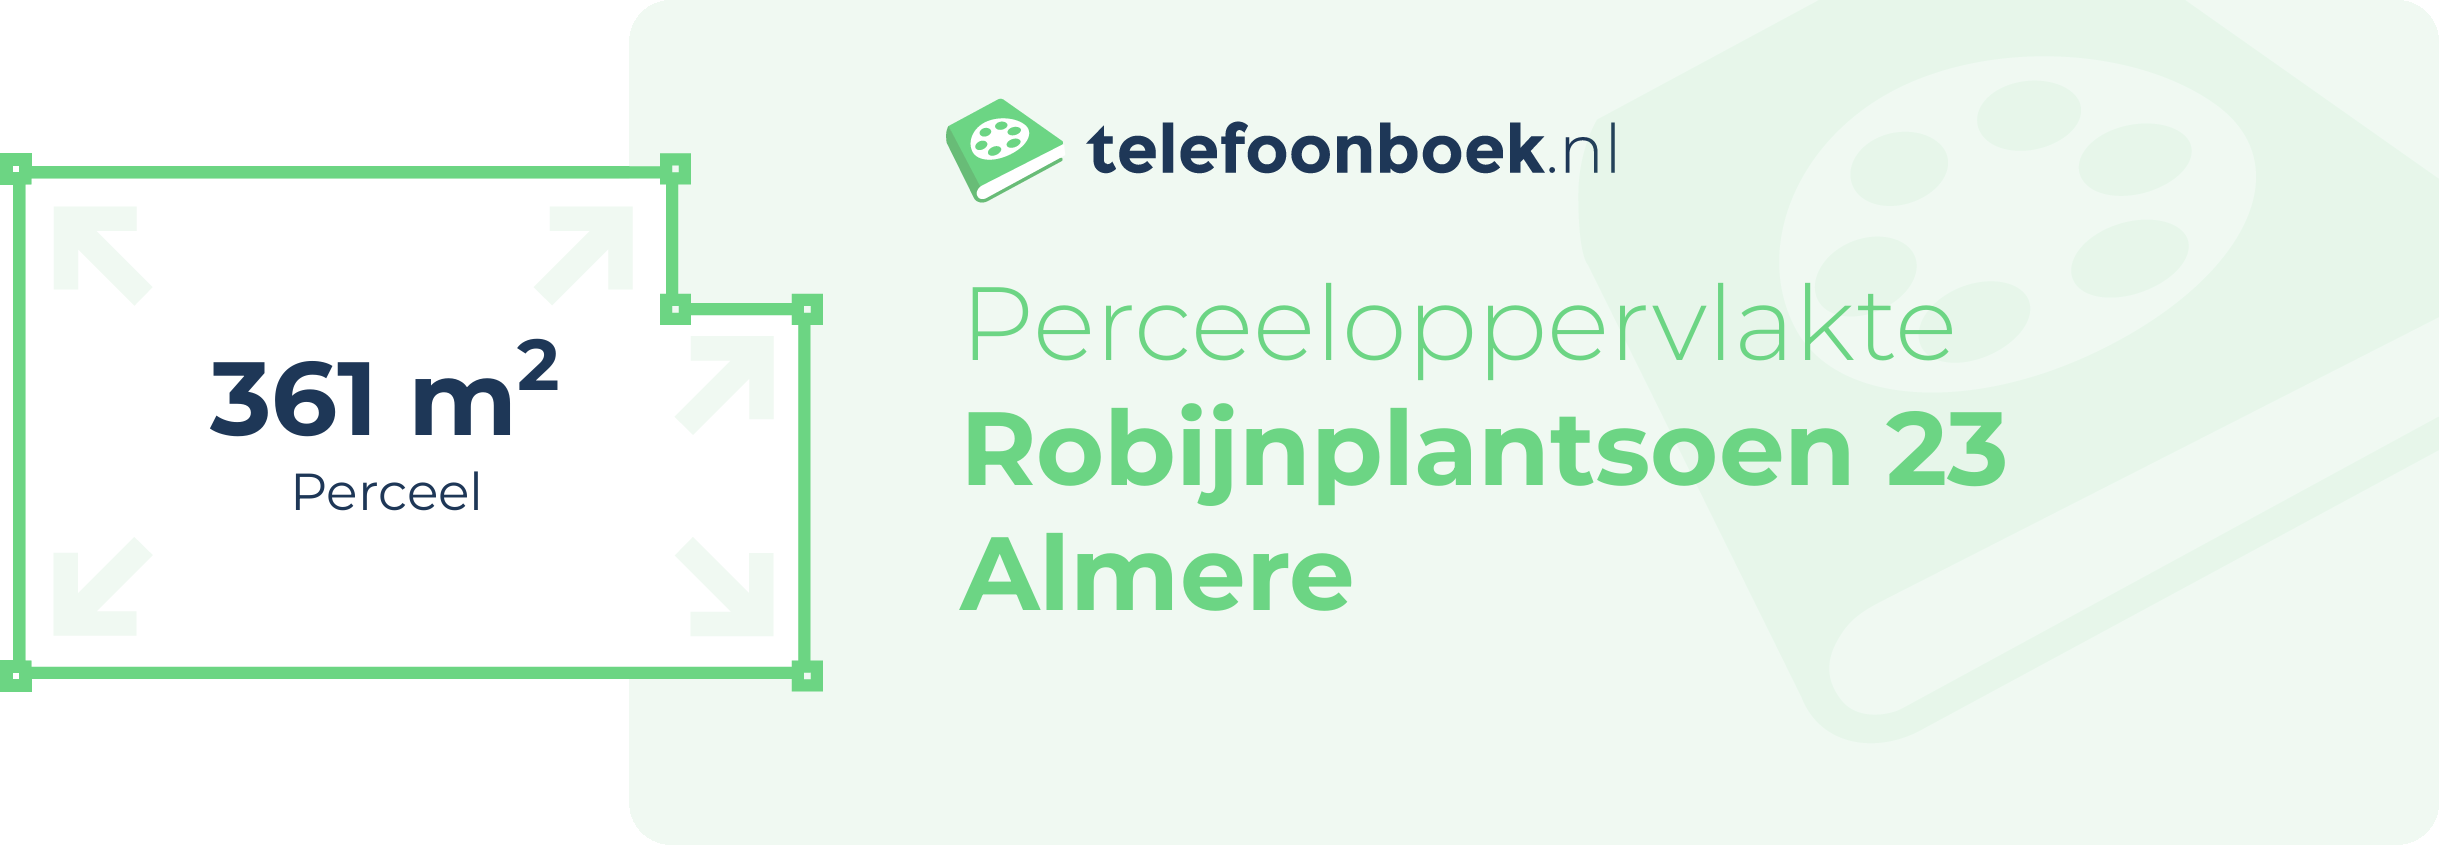 Perceeloppervlakte Robijnplantsoen 23 Almere